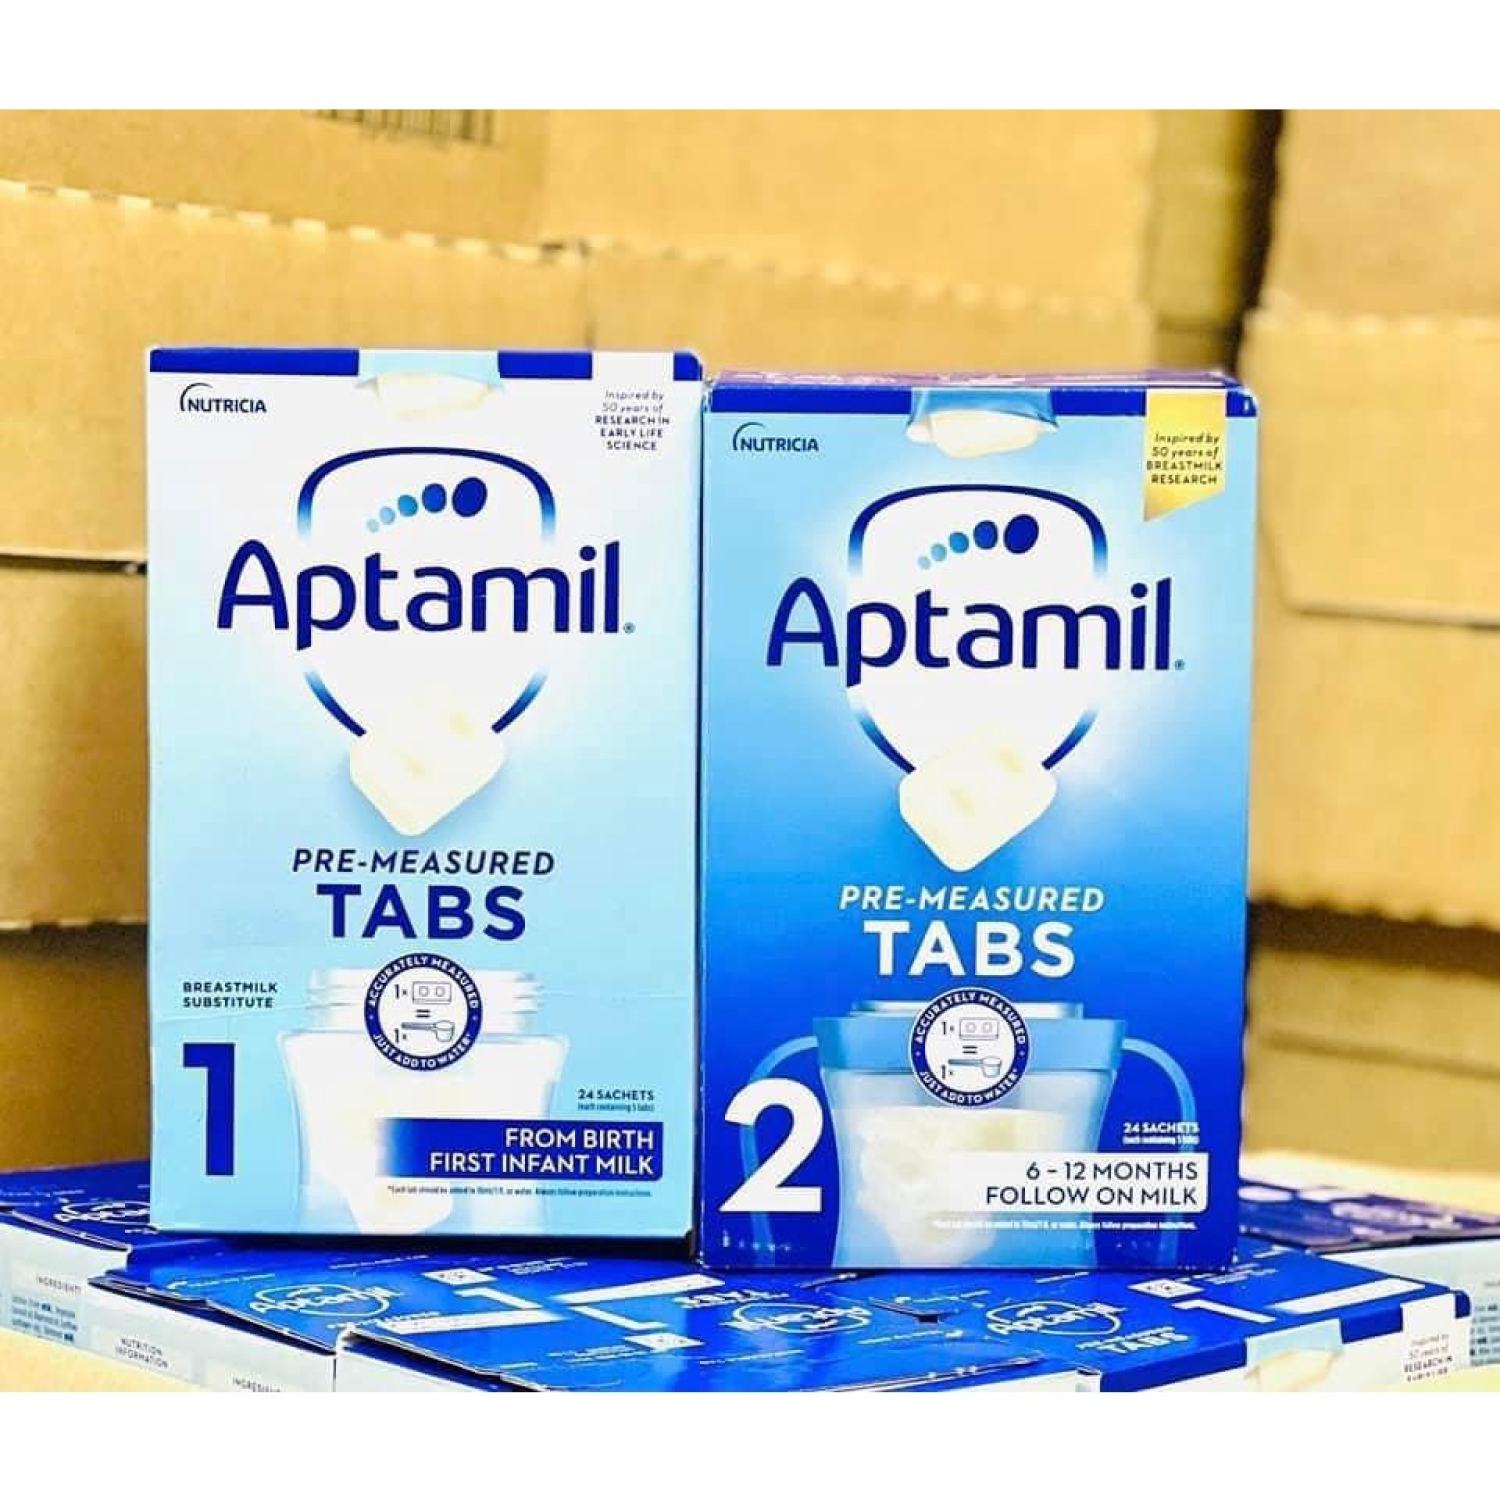 Sữa Aptamil Anh dạng thanh số 1,2 (hộp 24 thanh tiện lợi cho bé)